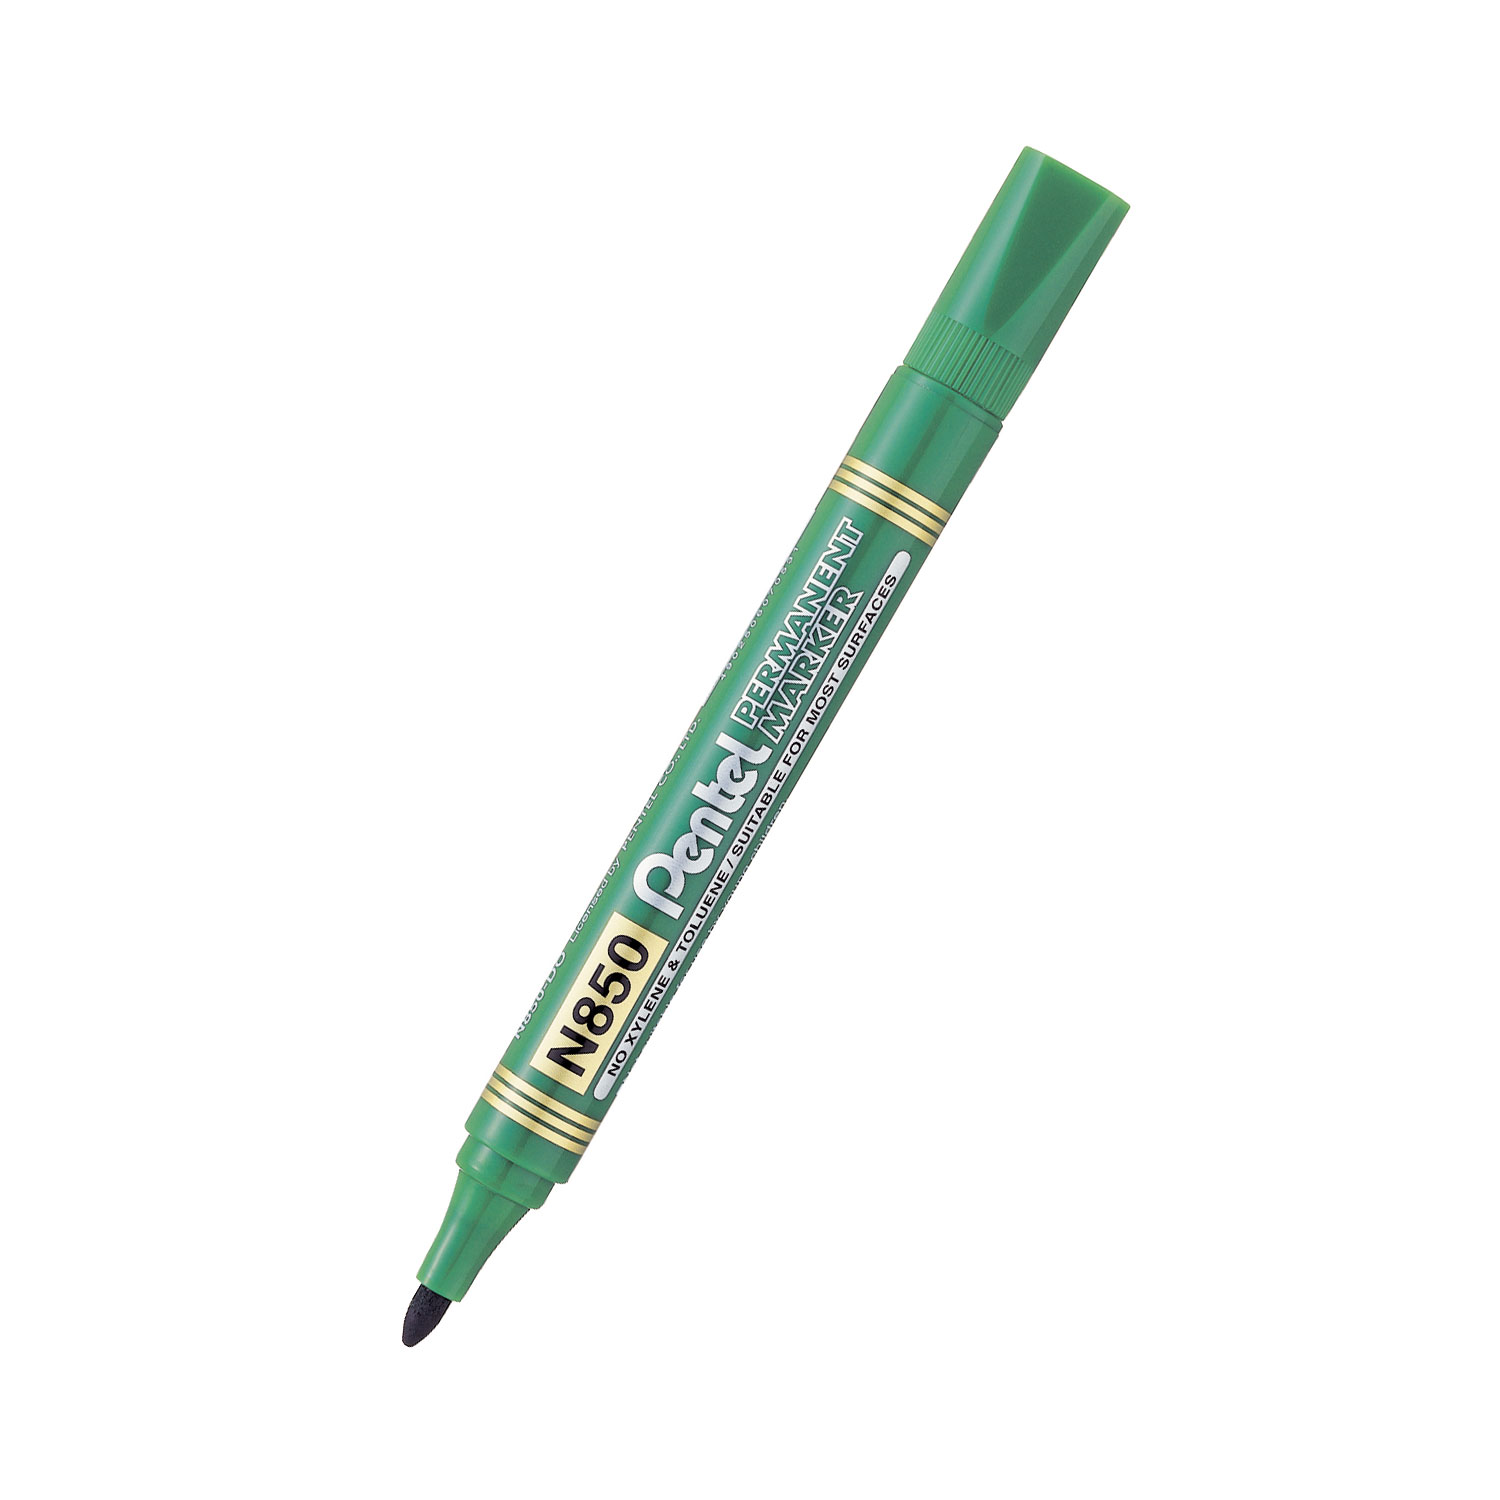 Popisovač Pentel Permanent Marker N850, permanentní, zelený